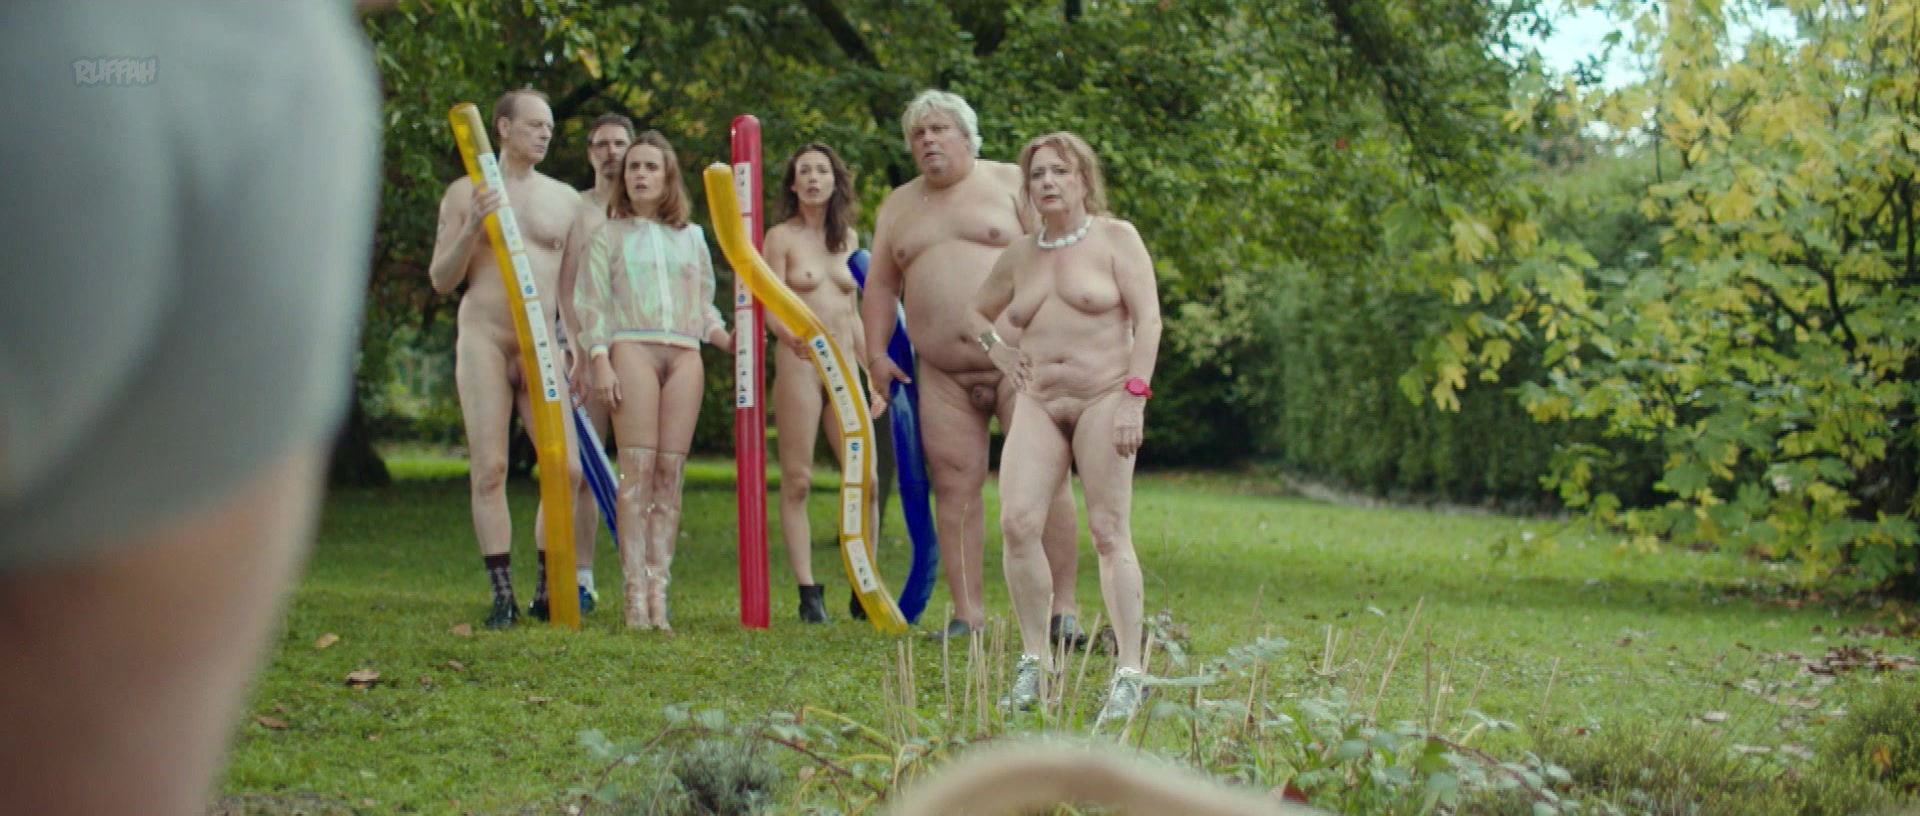 Nude video celebs » Malya Roman nude, Valérie Decobert-Koretzky nude,  Brigitte Faure nude - Nu s01e04 (2018)